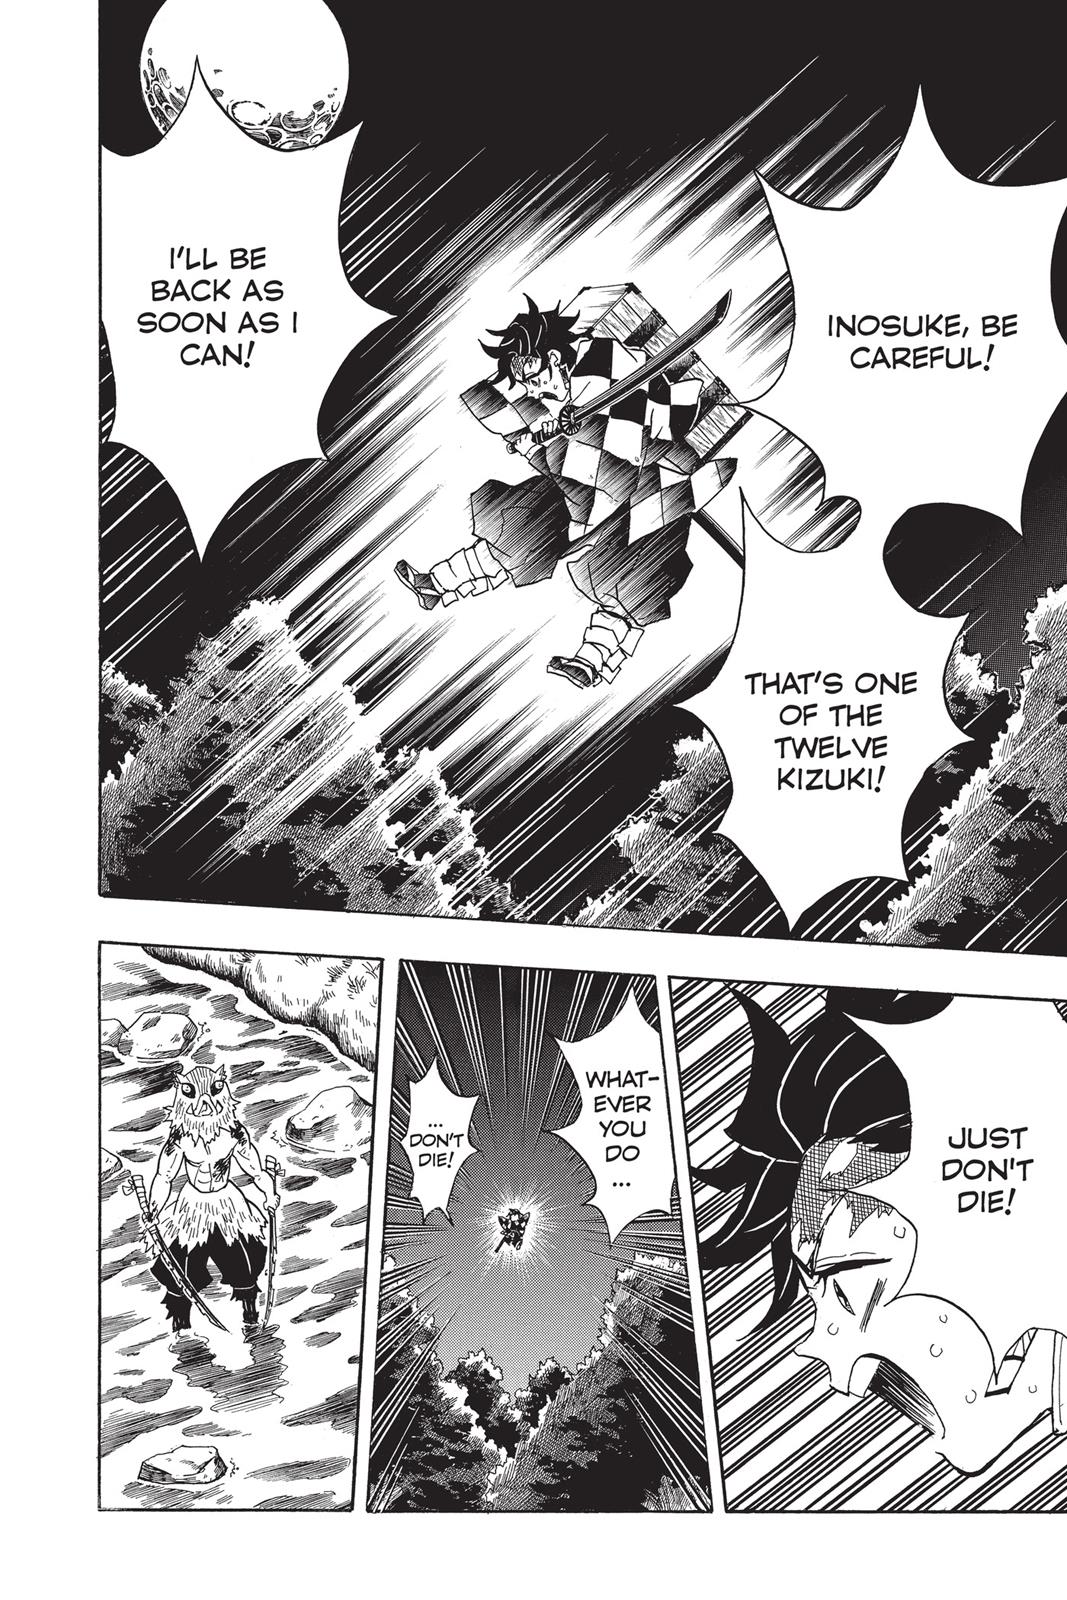 Demon Slayer Manga Manga Chapter - 35 - image 15